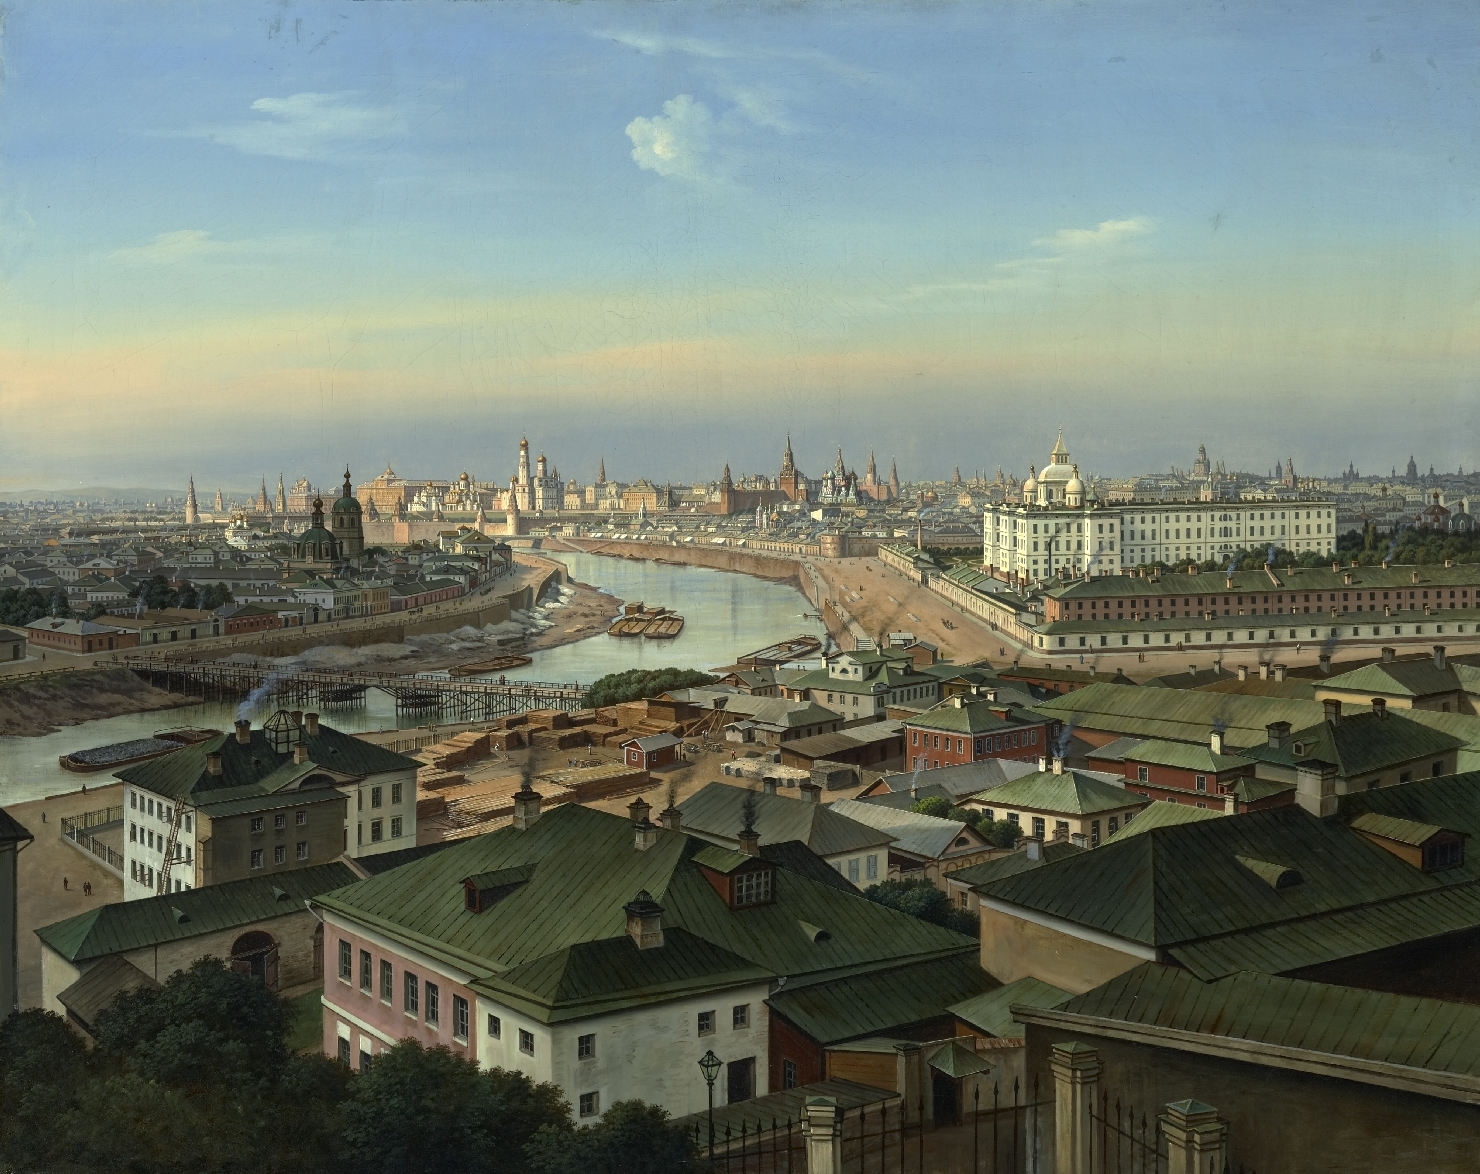 Ansichten von Moskau mit dem Kreml, 1860/70, Öl auf Leinwand, Inv.-Nr. 9047-49